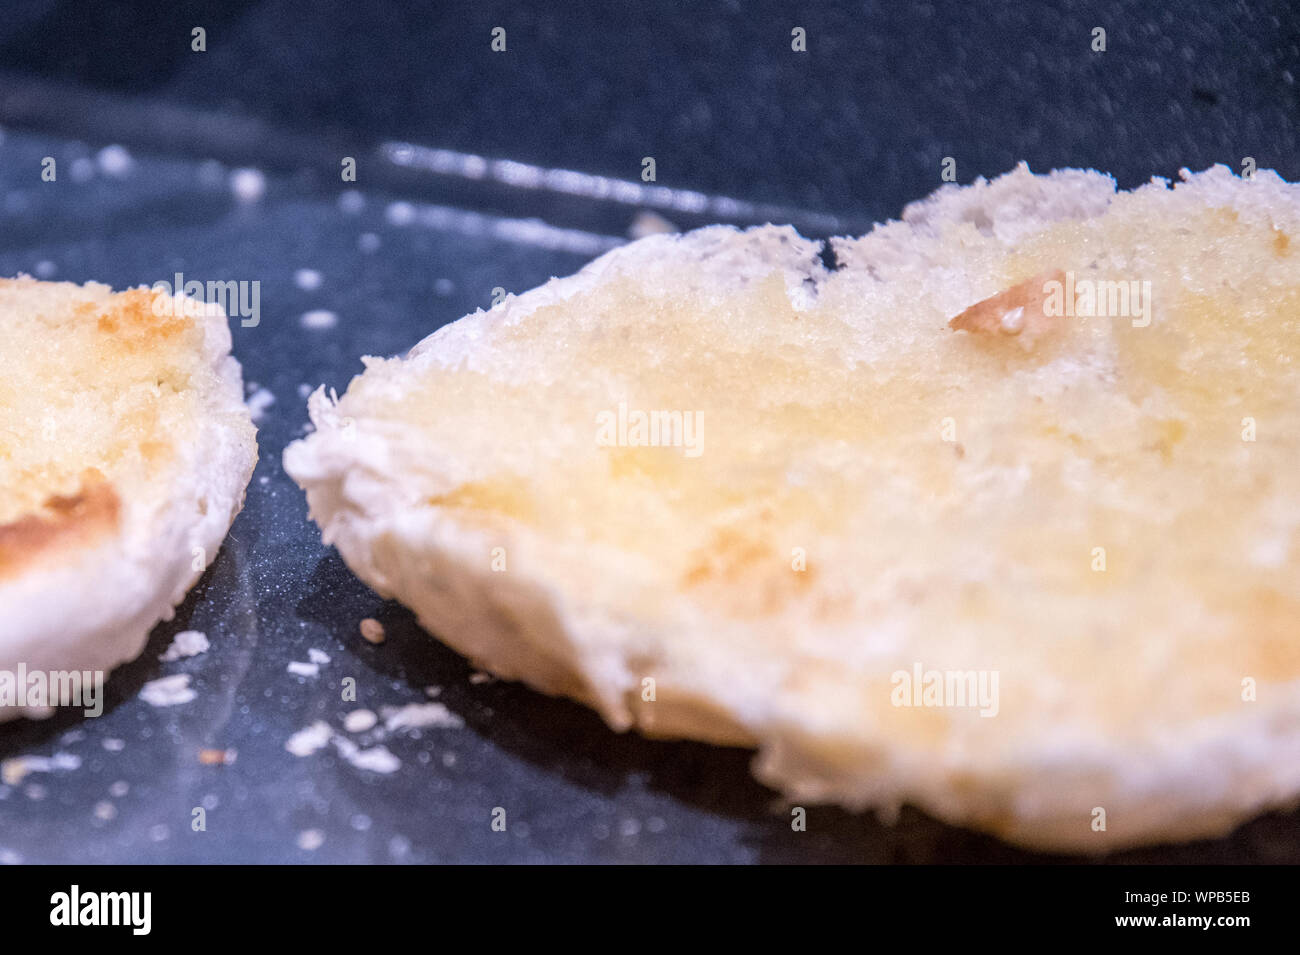 Tagliato e aperto rotoli imburrati e su un vassoio tostato con briciole nel vassoio. La strato imburrato è una dorata dopo la cottura in forno. Foto Stock